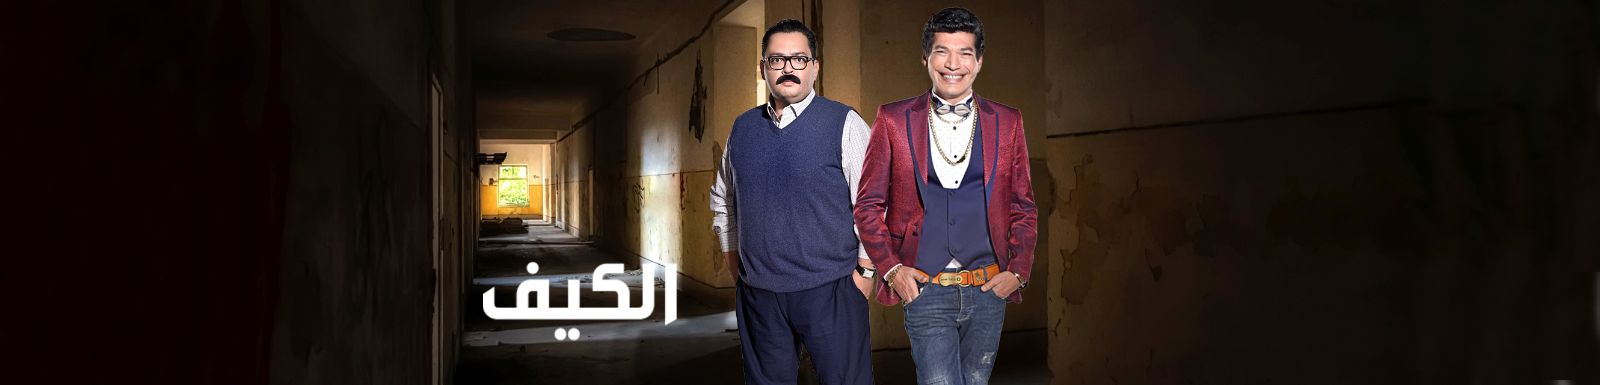 رسميا موعد وتوقيت عرض مسلسل الكيف 2016 على قناة mbc مصر 2